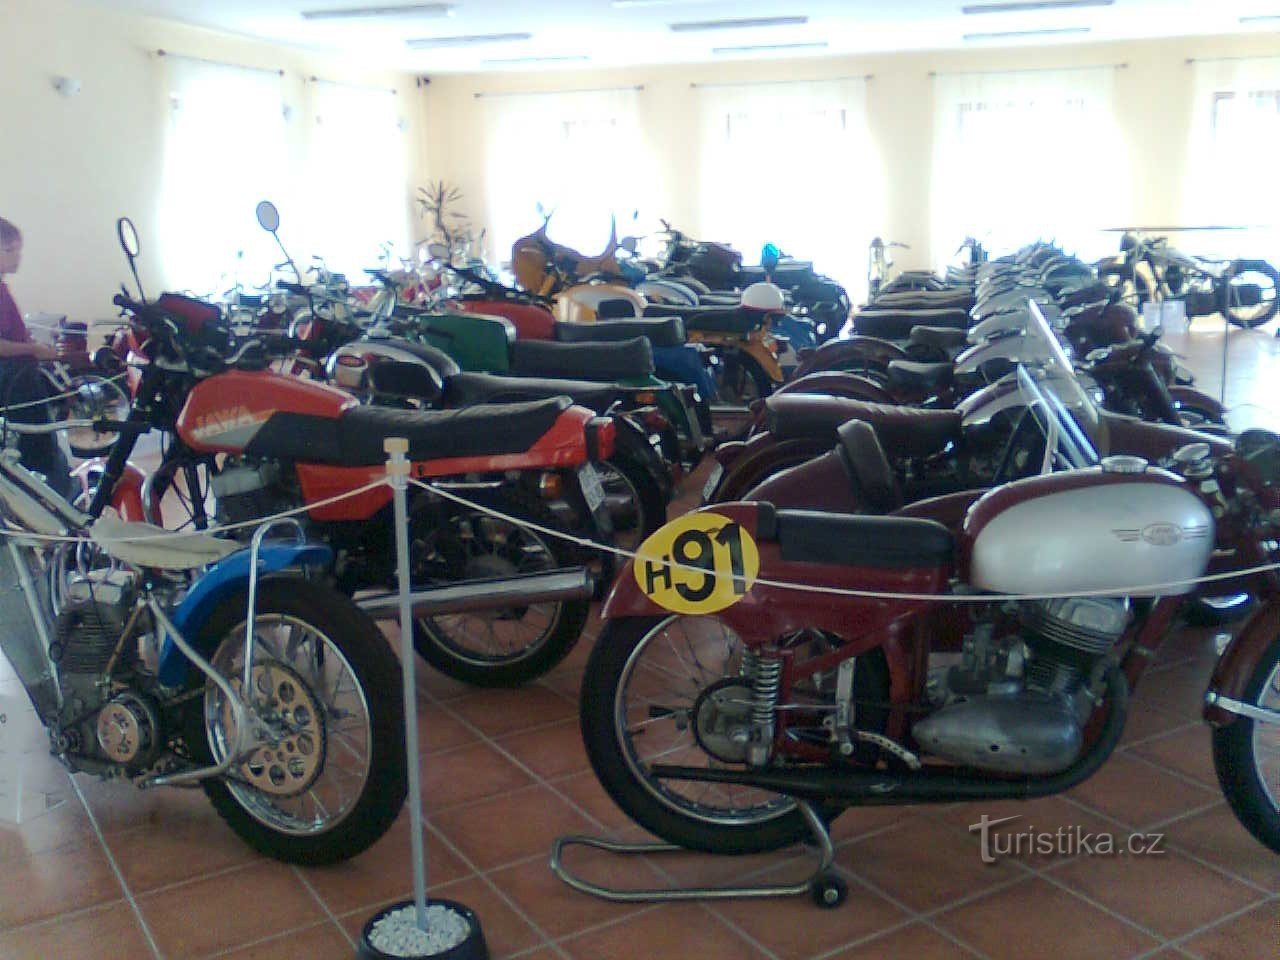 Museo de la motocicleta Křivoklát